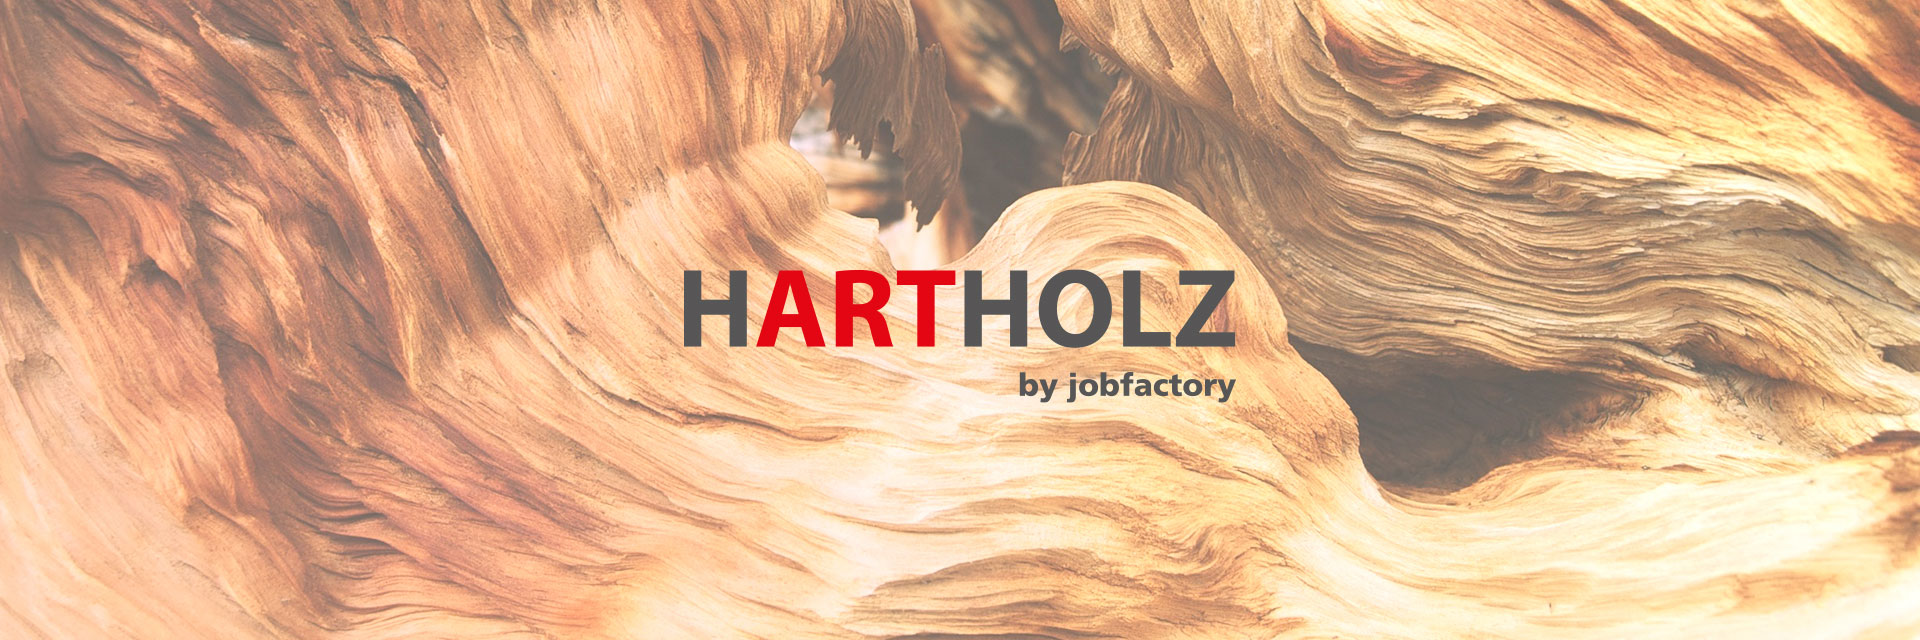 Jobfactory Hartholz